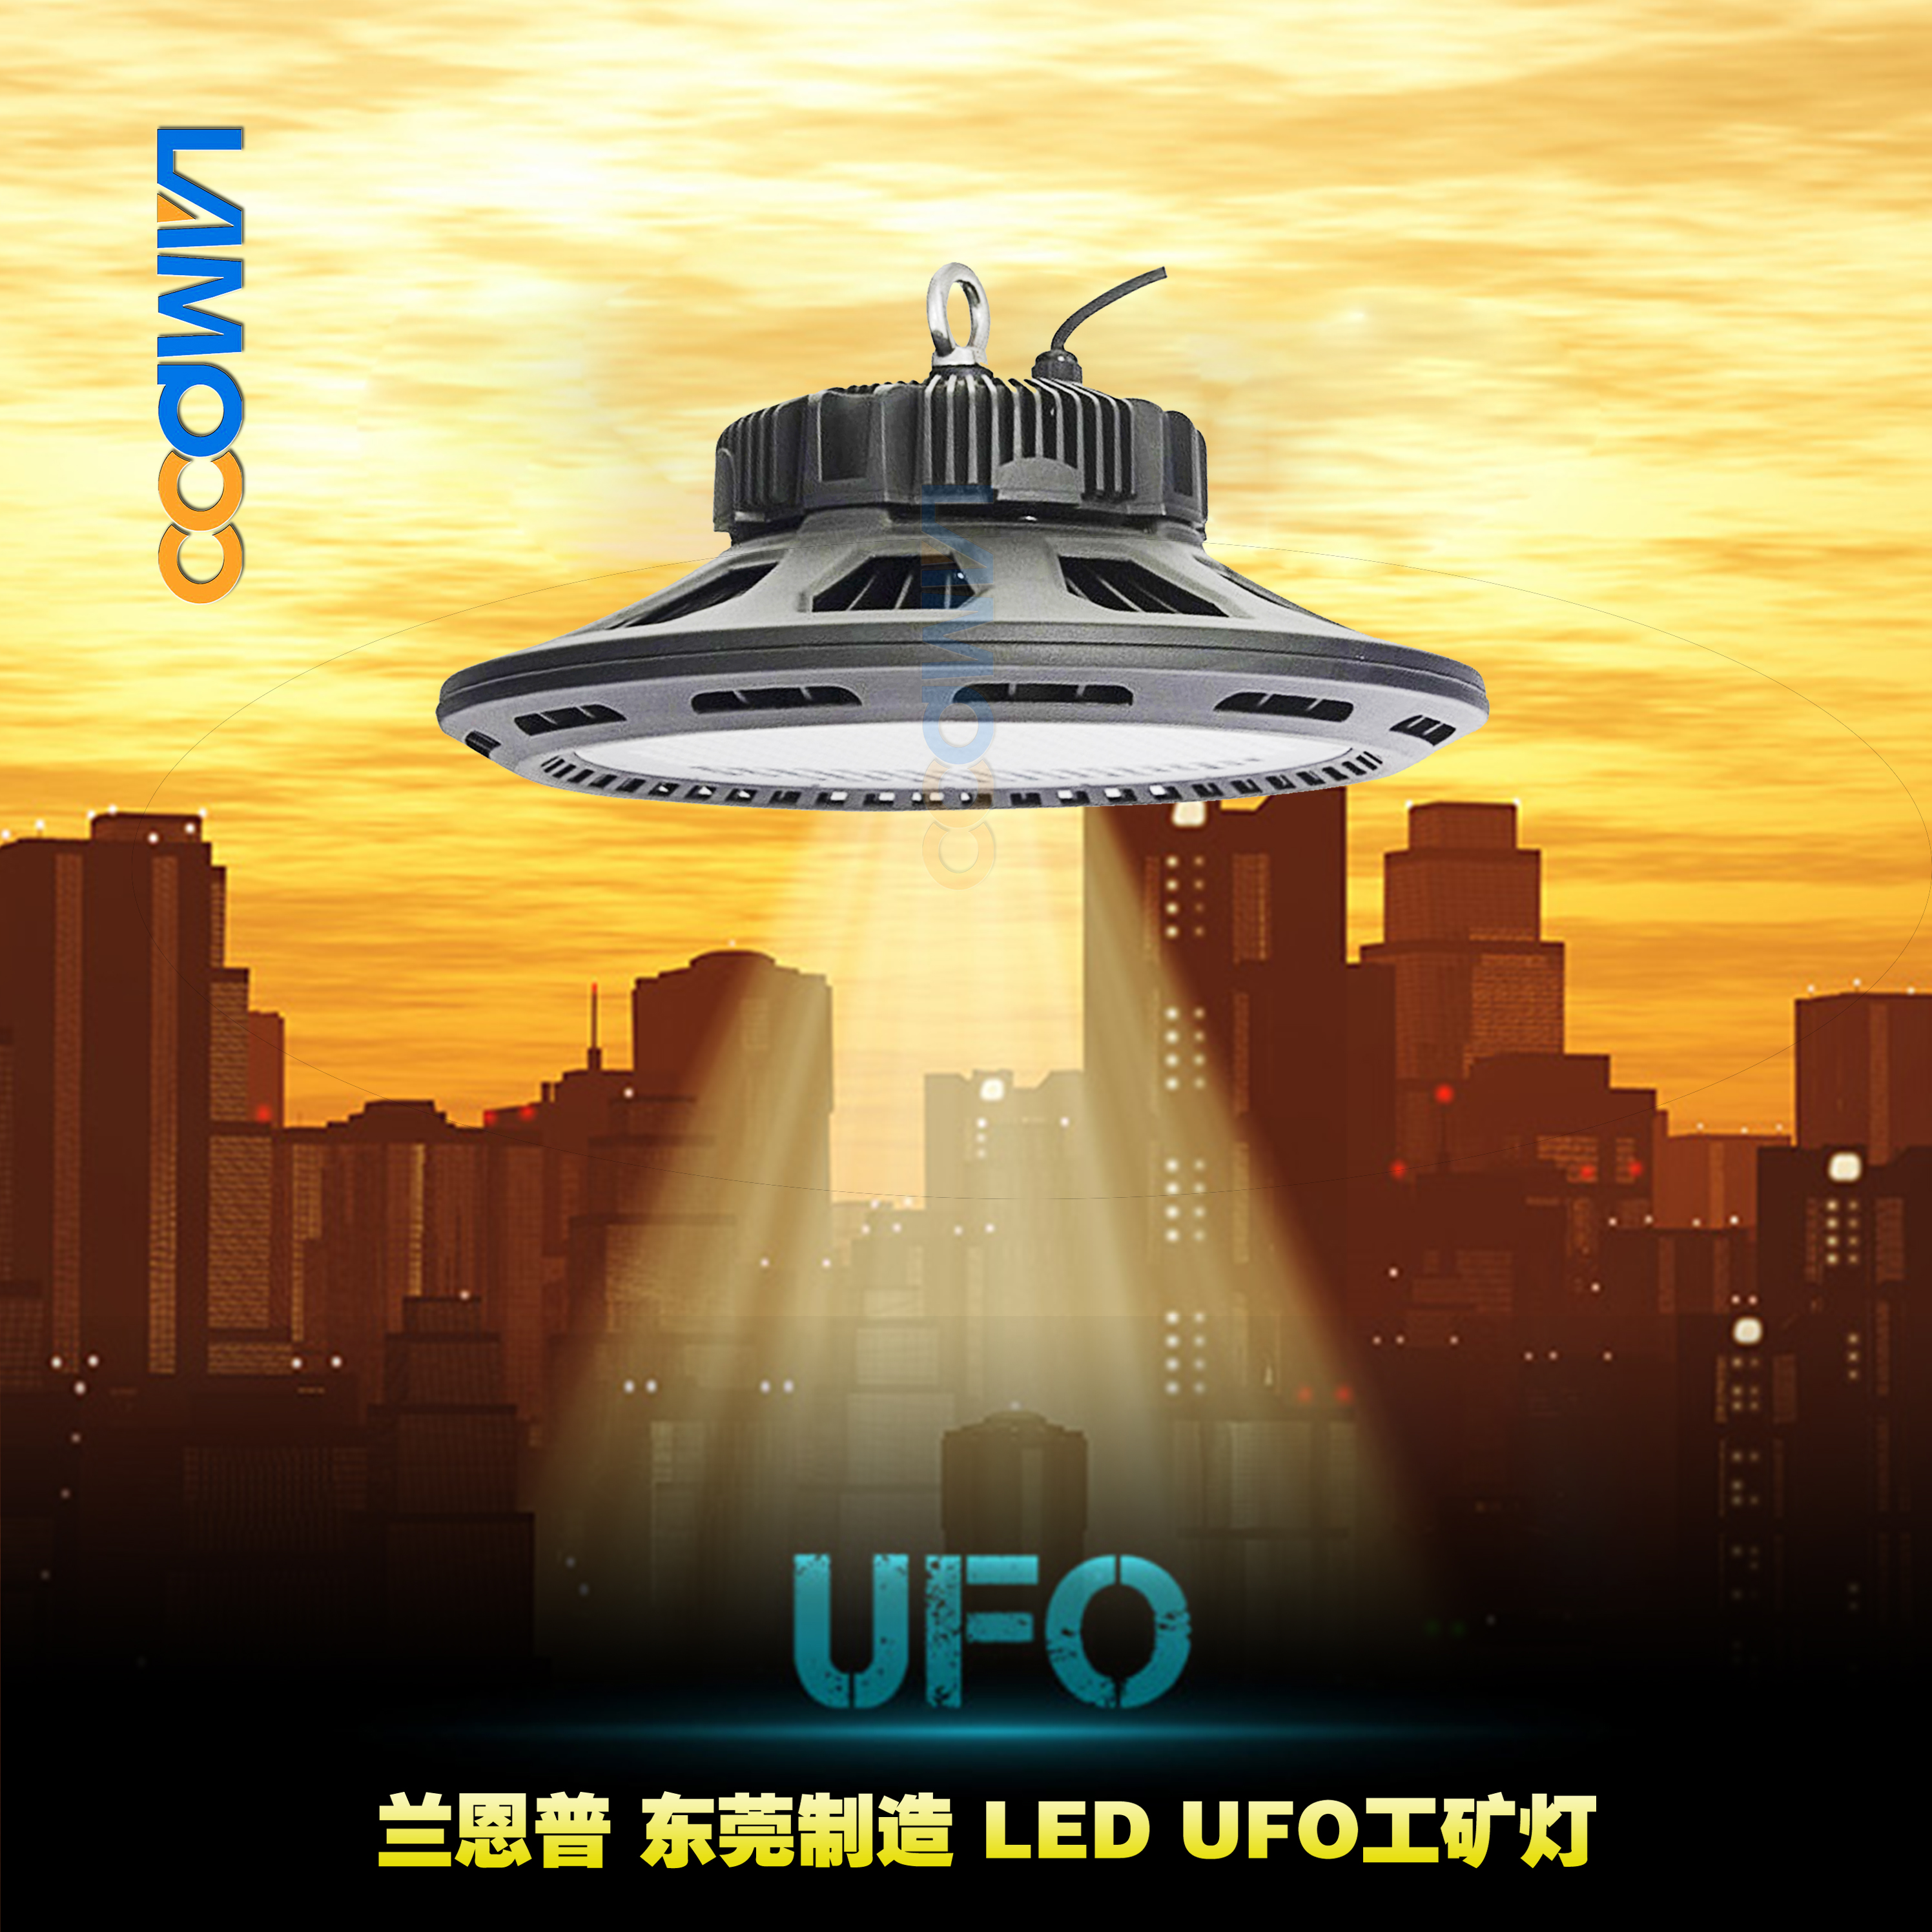 广东 LED UFO工矿灯生产厂家供应直销 东莞优质厂家UFO工矿灯批发价